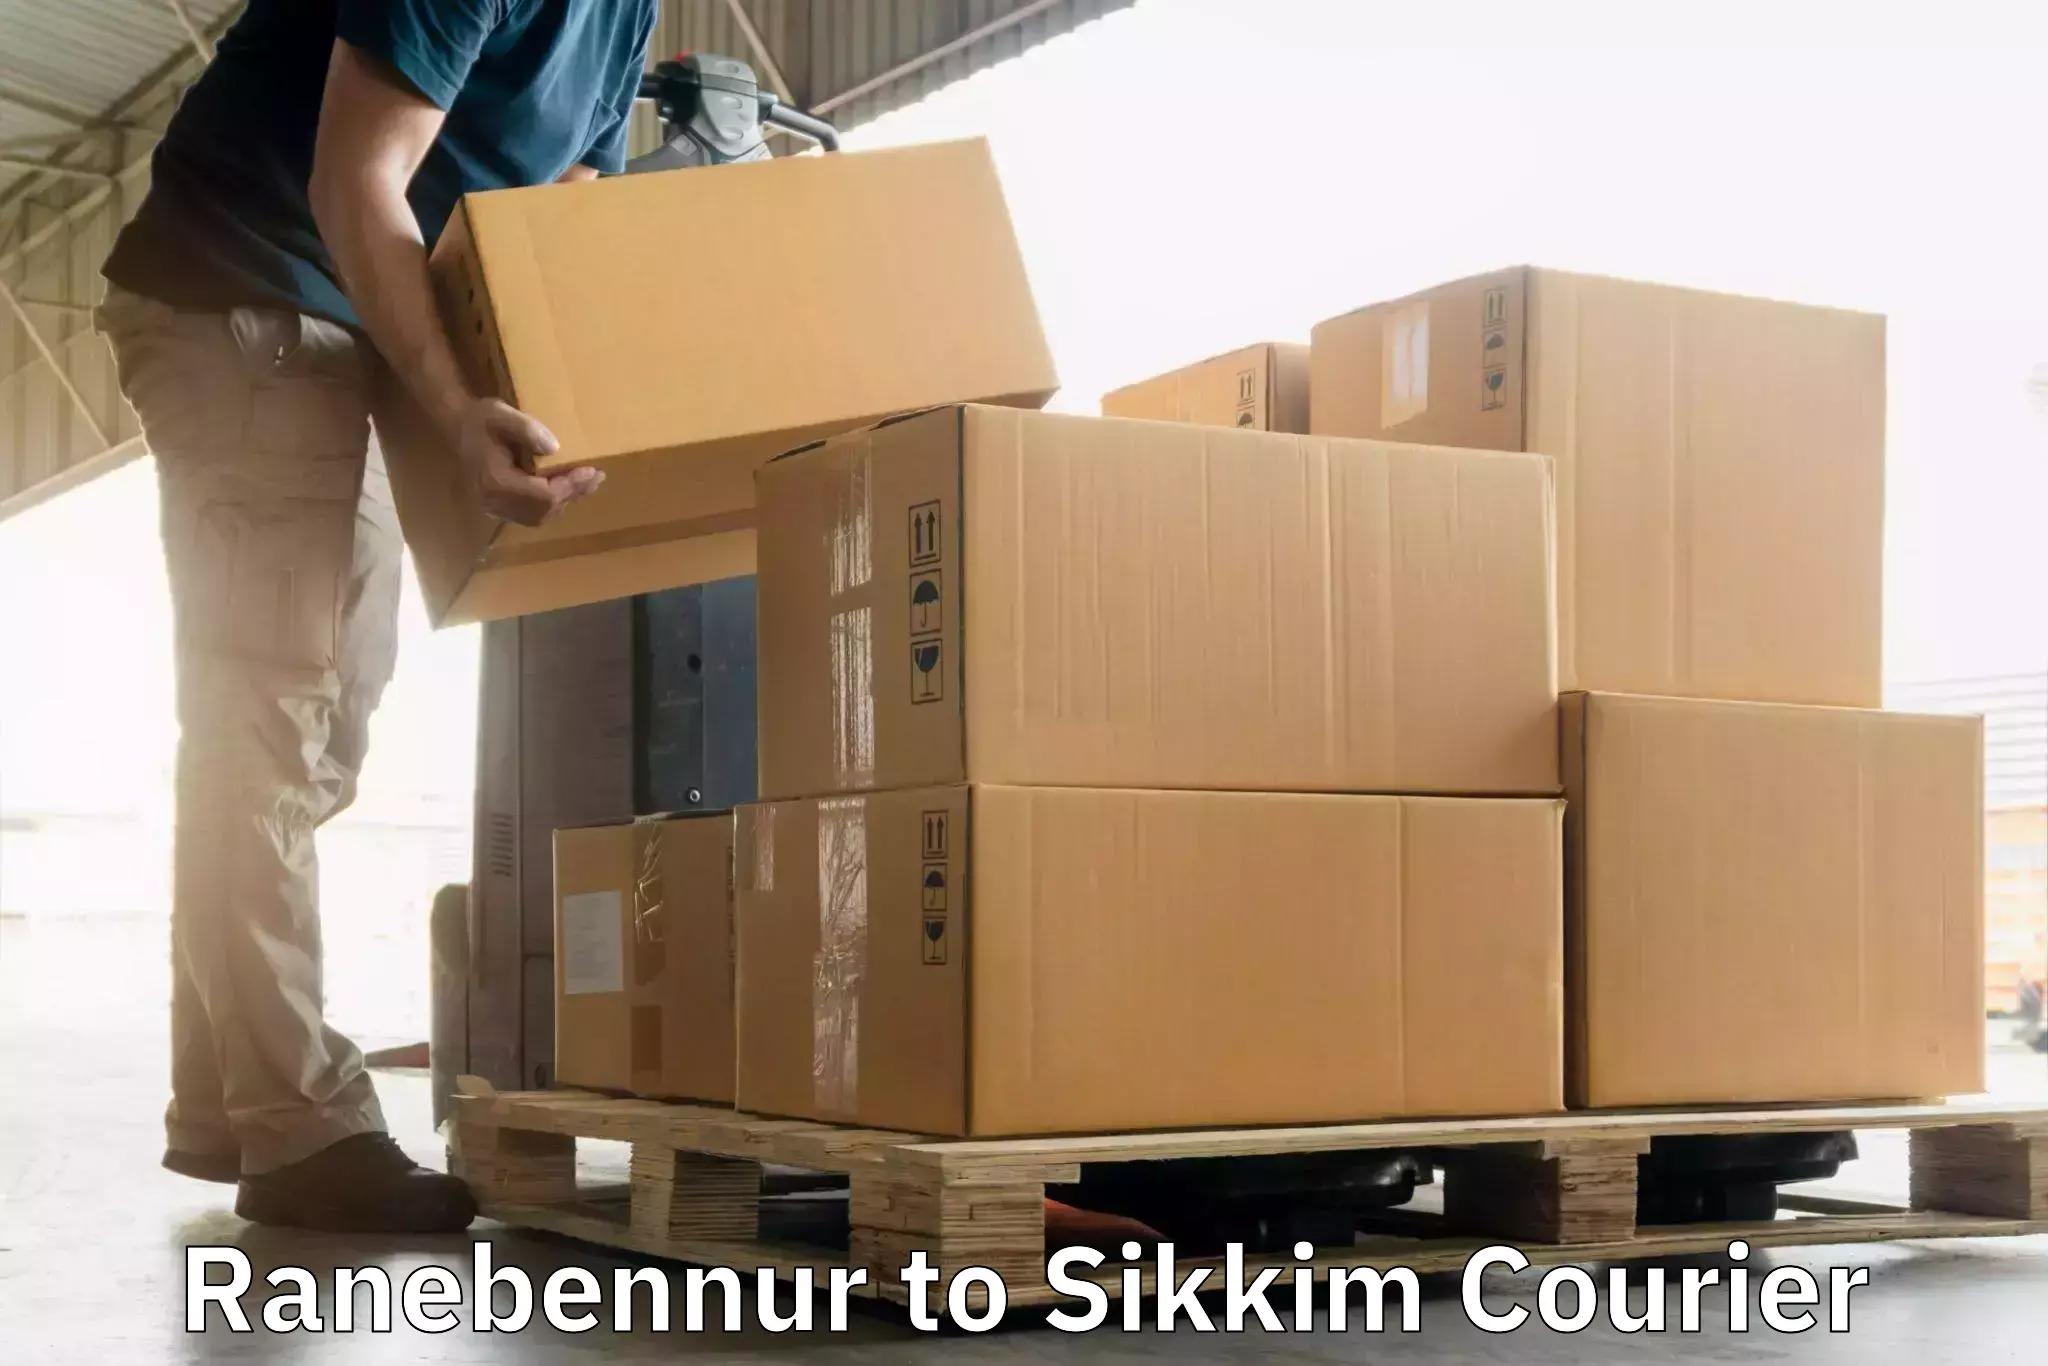 Next-generation courier services Ranebennur to West Sikkim